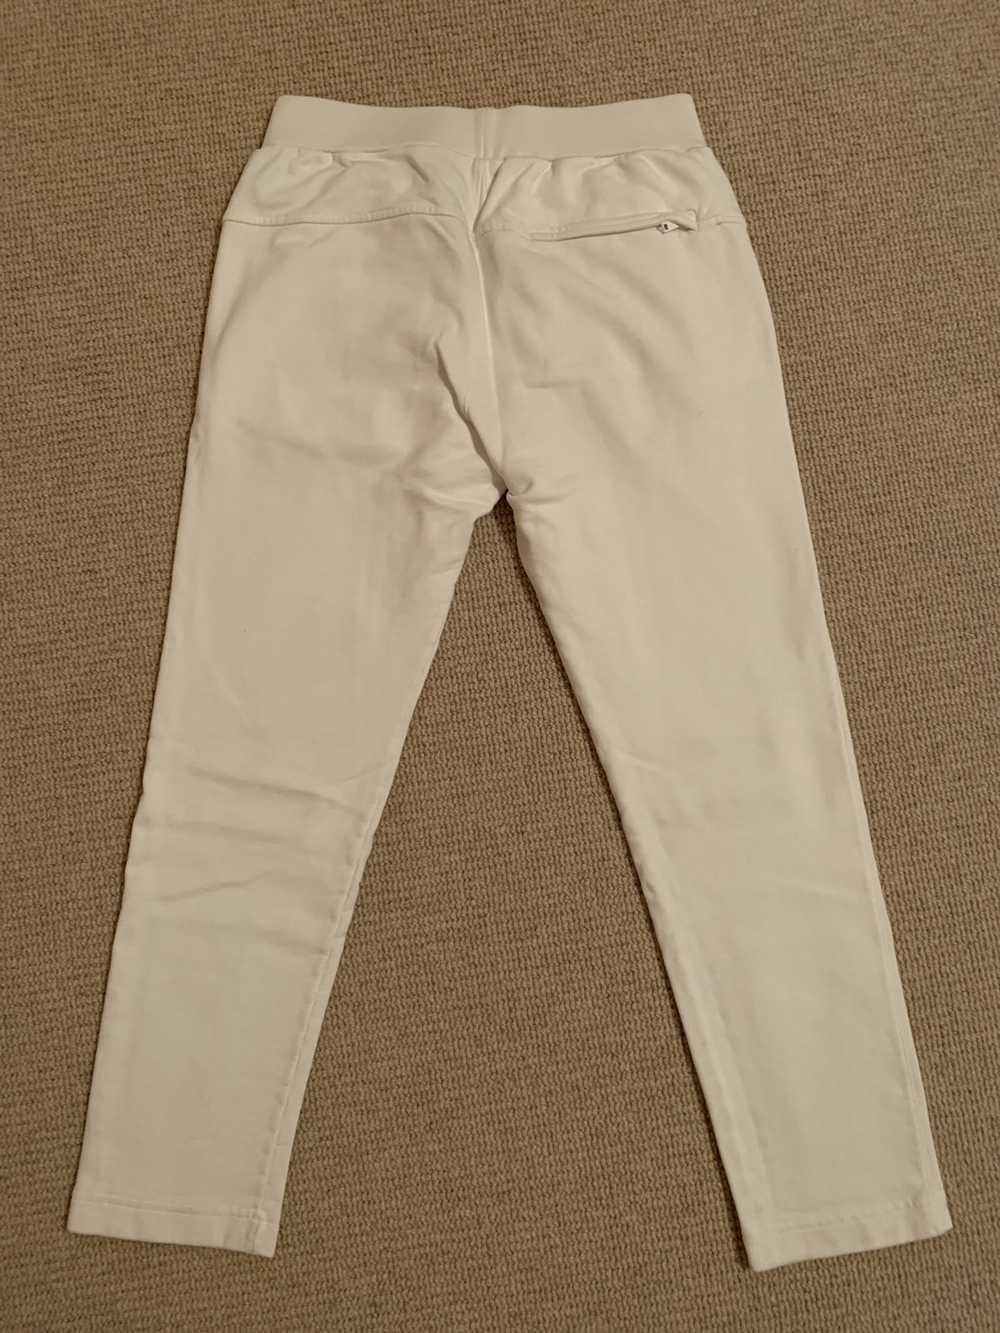 Theory THEORY White cotton sweatpants size M - image 2